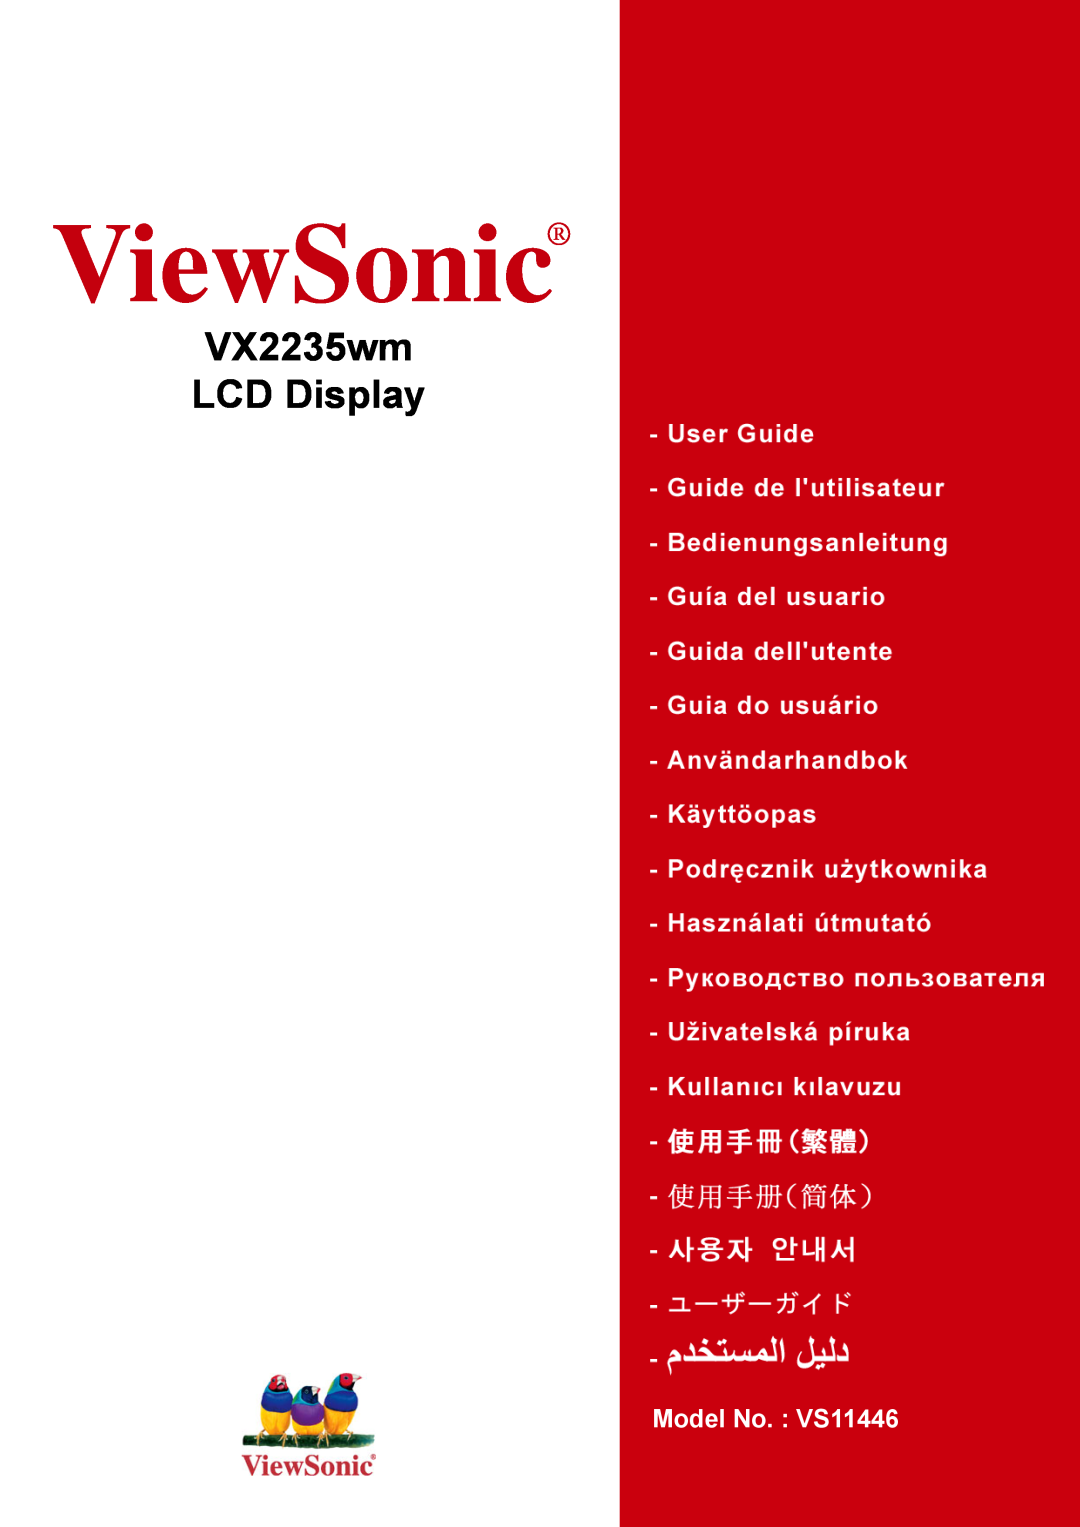 ViewSonic VX2235WM manual ViewSonic, VX2235wm LCD Display, Model No. VS11446 